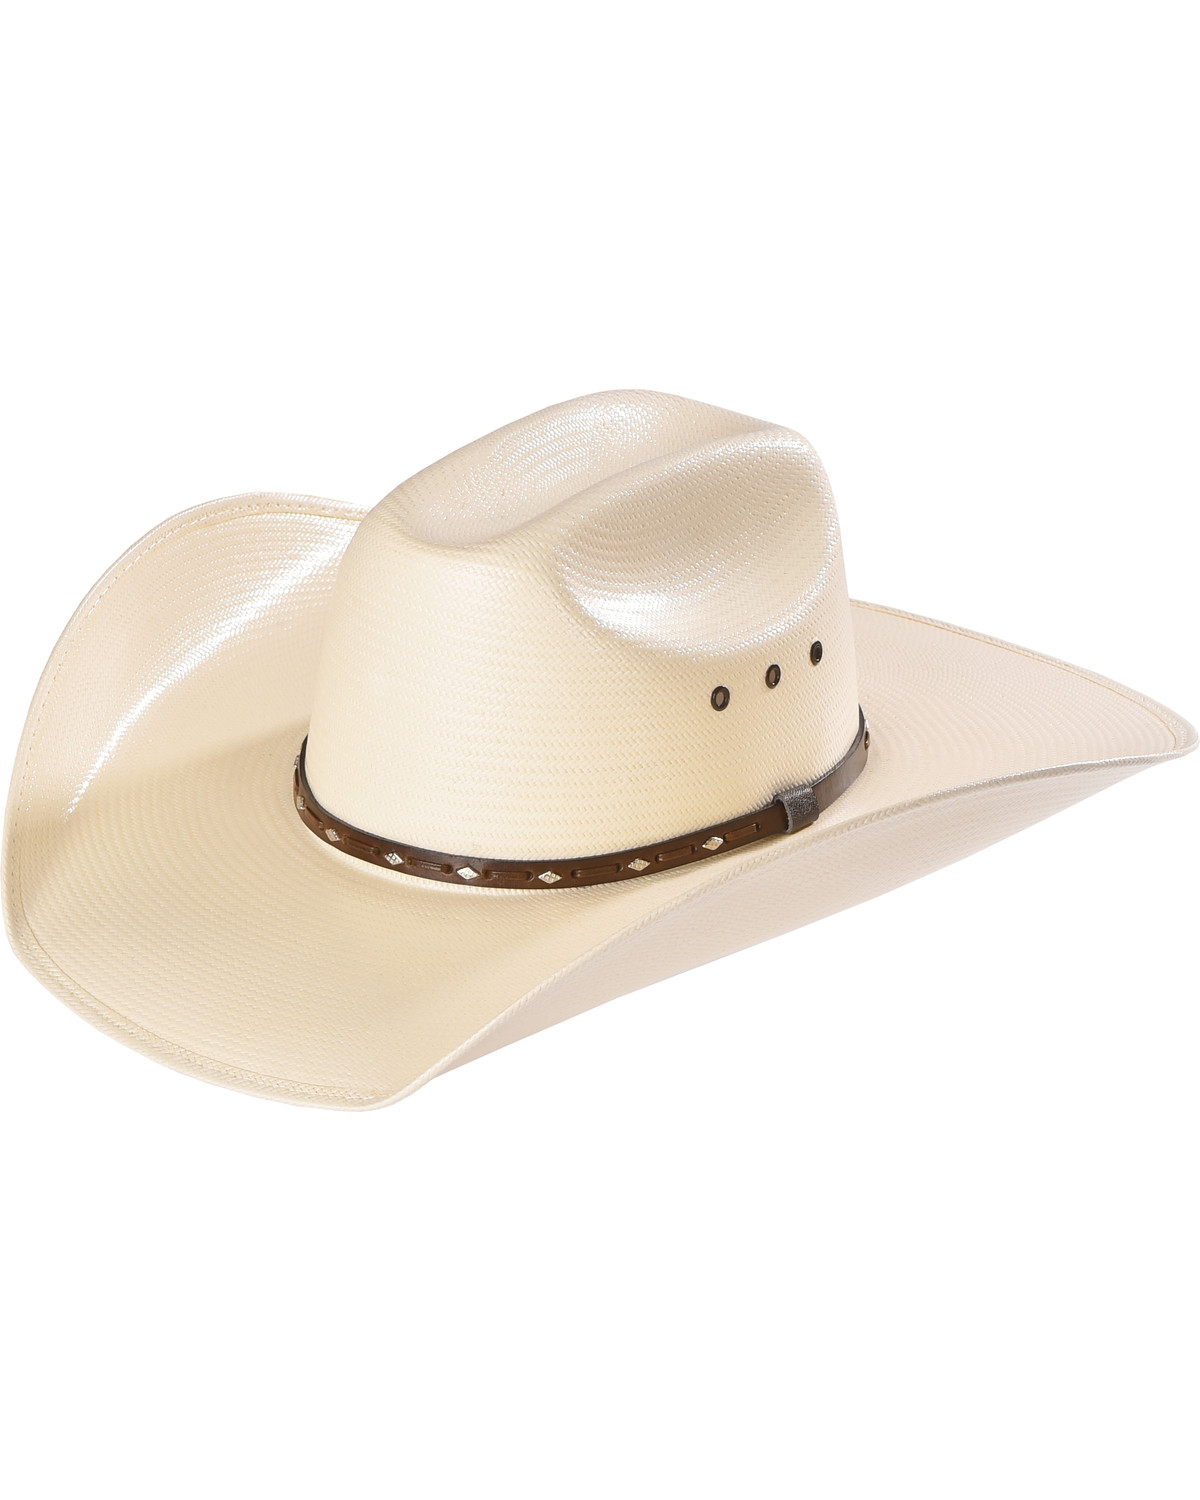 Cody James Natural Straw Cowboy Hat